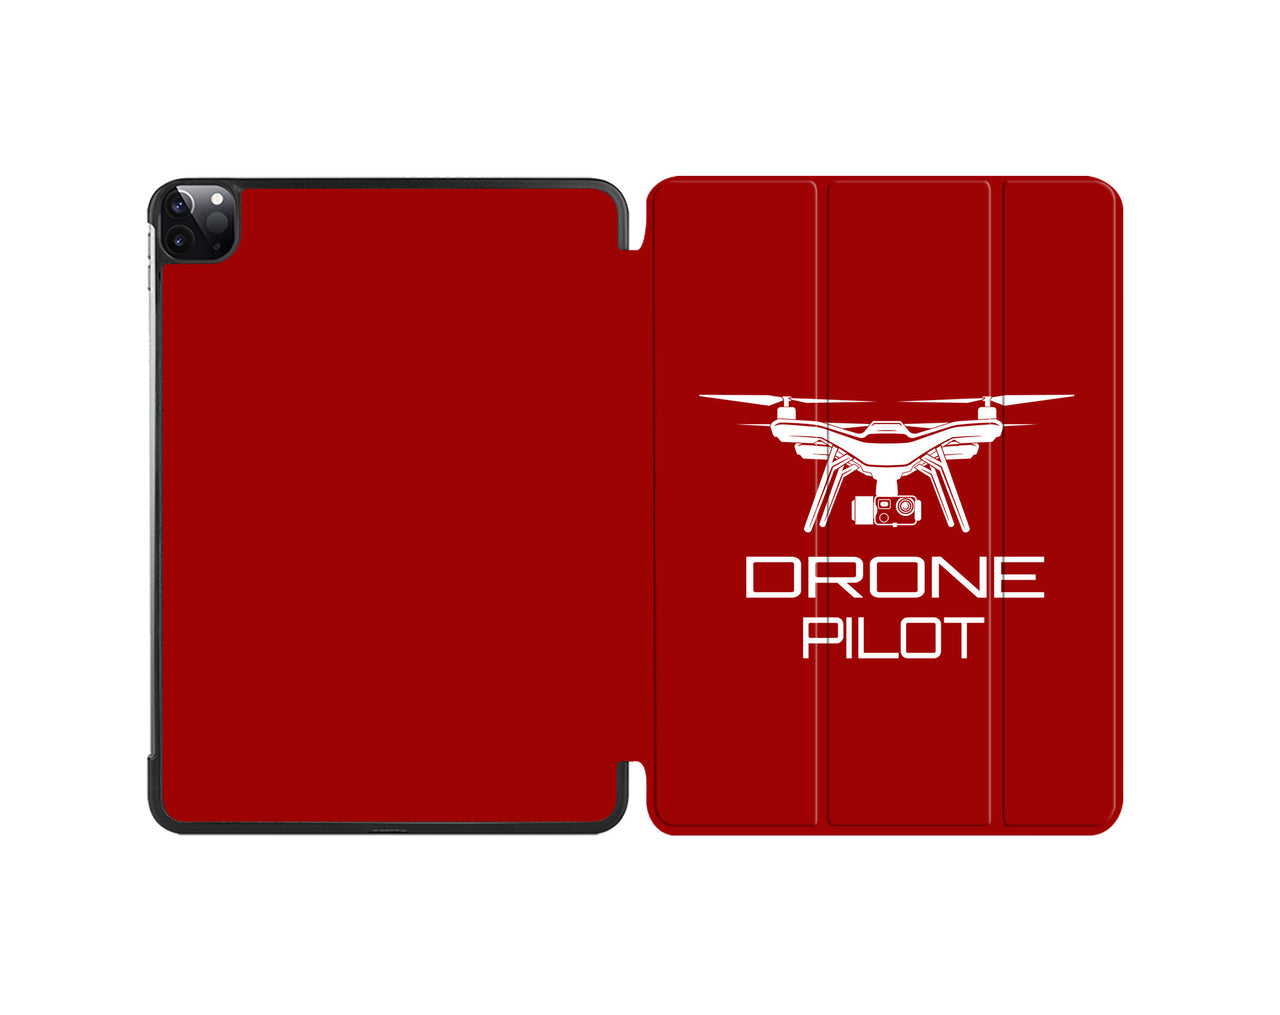 Drone Pilot Designed iPad Cases